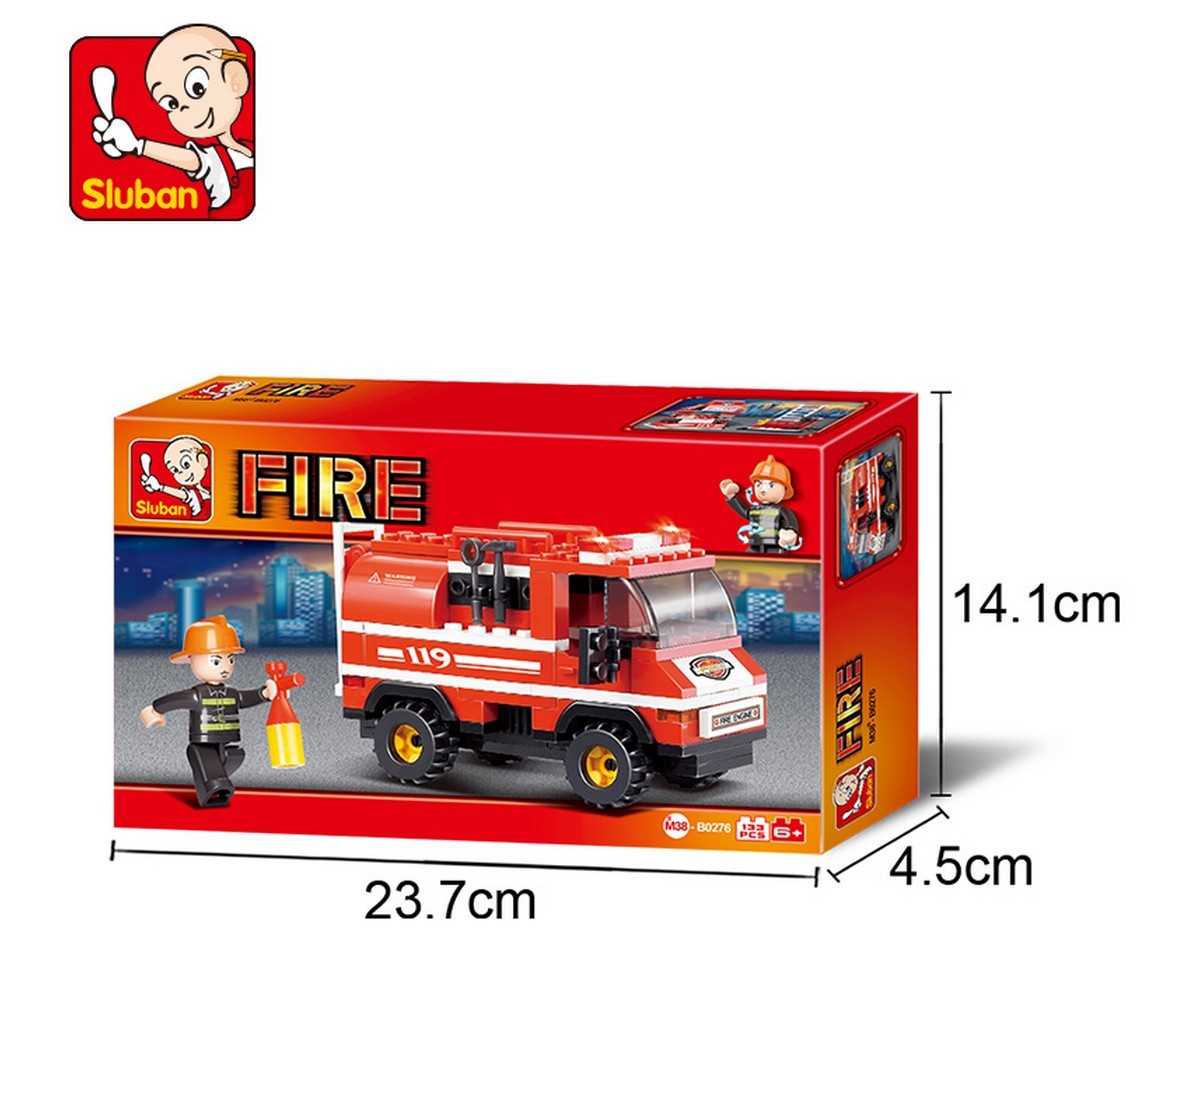 Sluban Mini Fire Truck Plastic Building Block set of 133 pieces Multicolor 6Y+